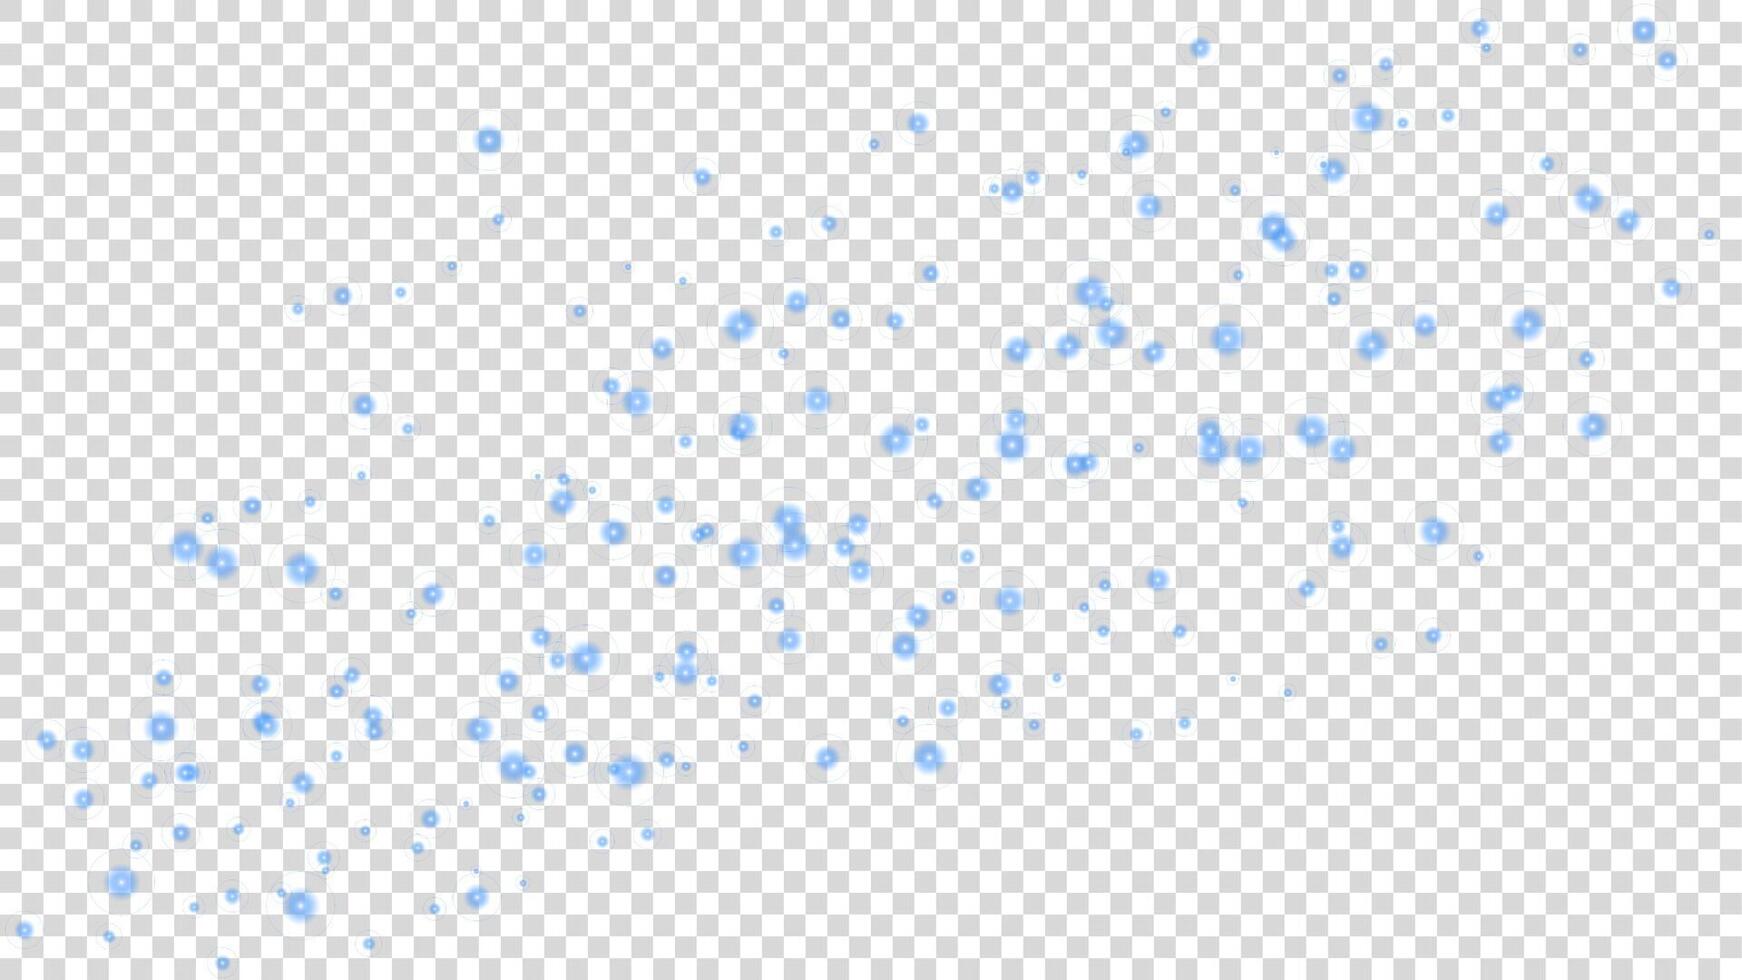 Blau Partikel fliegend auf Weiß Hintergrund vektor